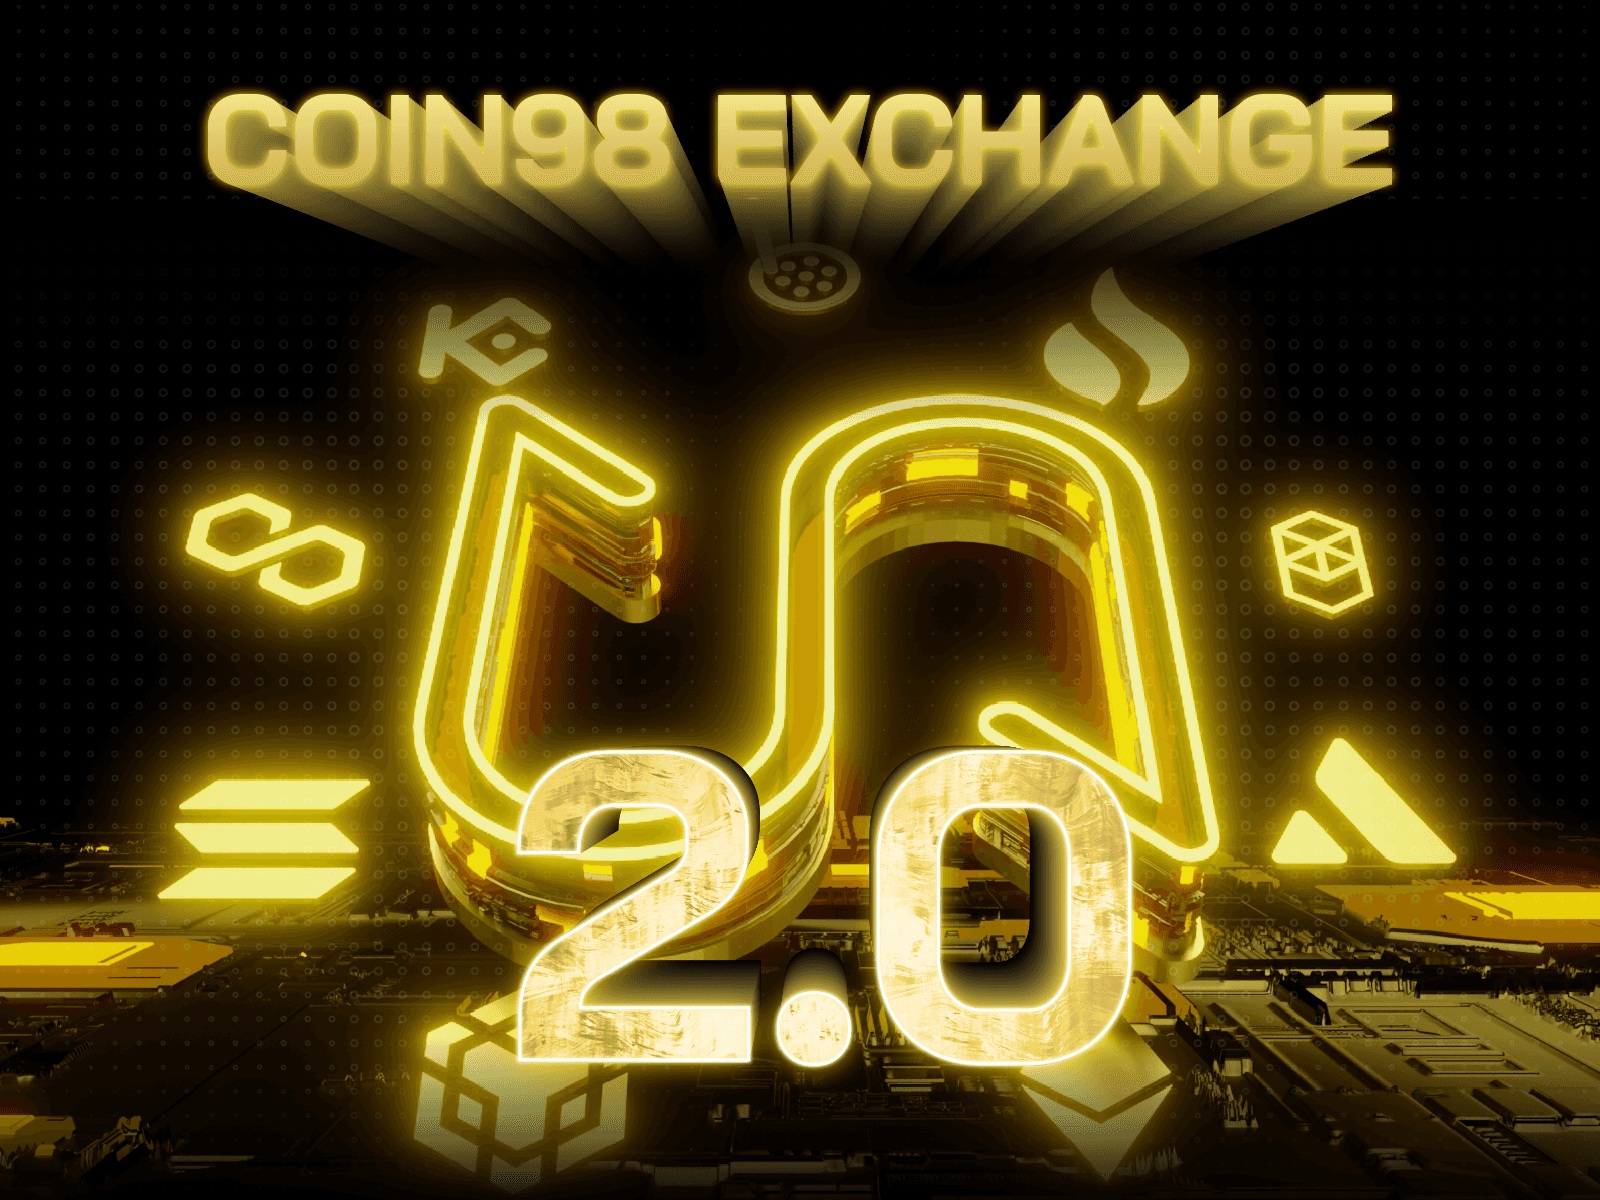 Coin98 Exchange là gì? Hướng dẫn sử dụng Coin98 Exchange 2.0